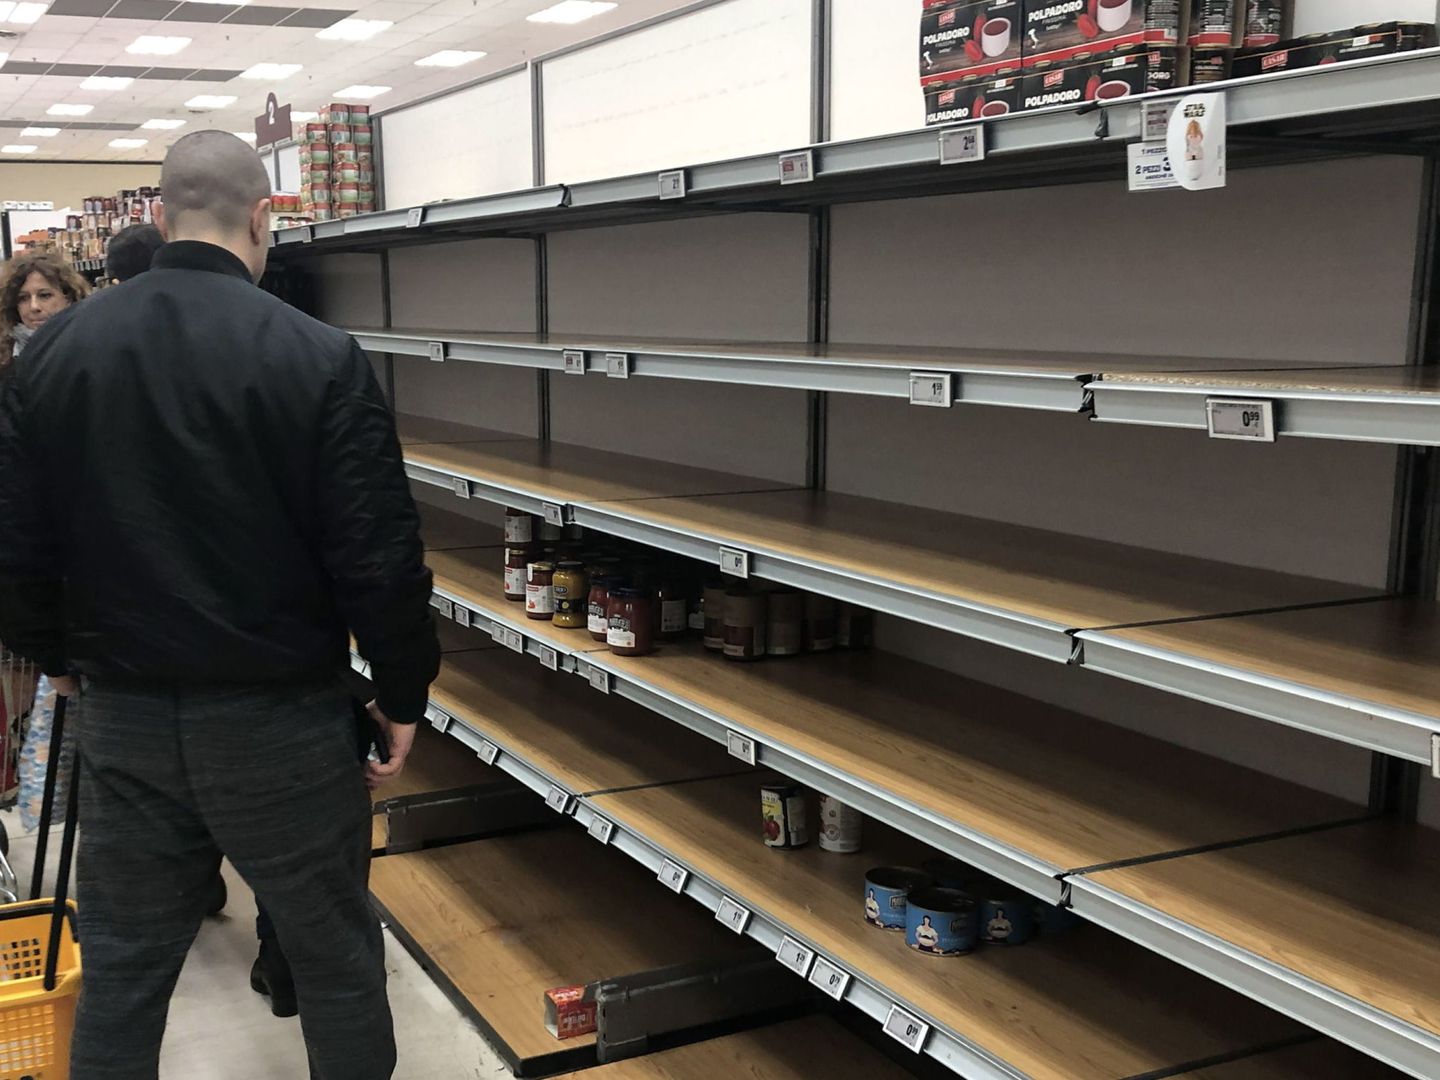 Estantes vacíos en el supermercado Esselunga, Milán. (Reuters)